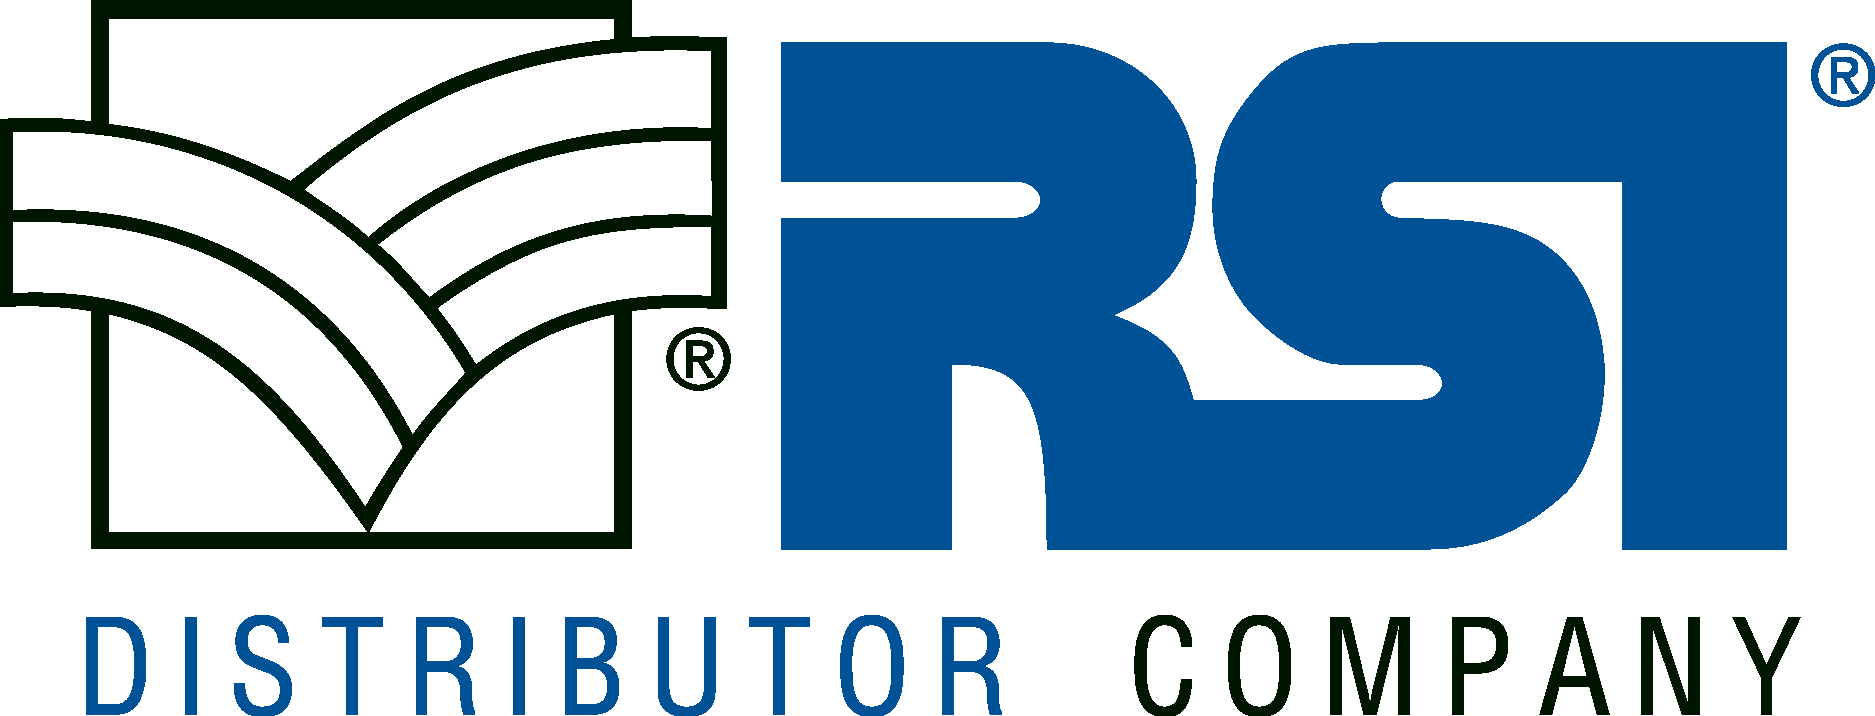 RSI Distributor Company new Logo Vector